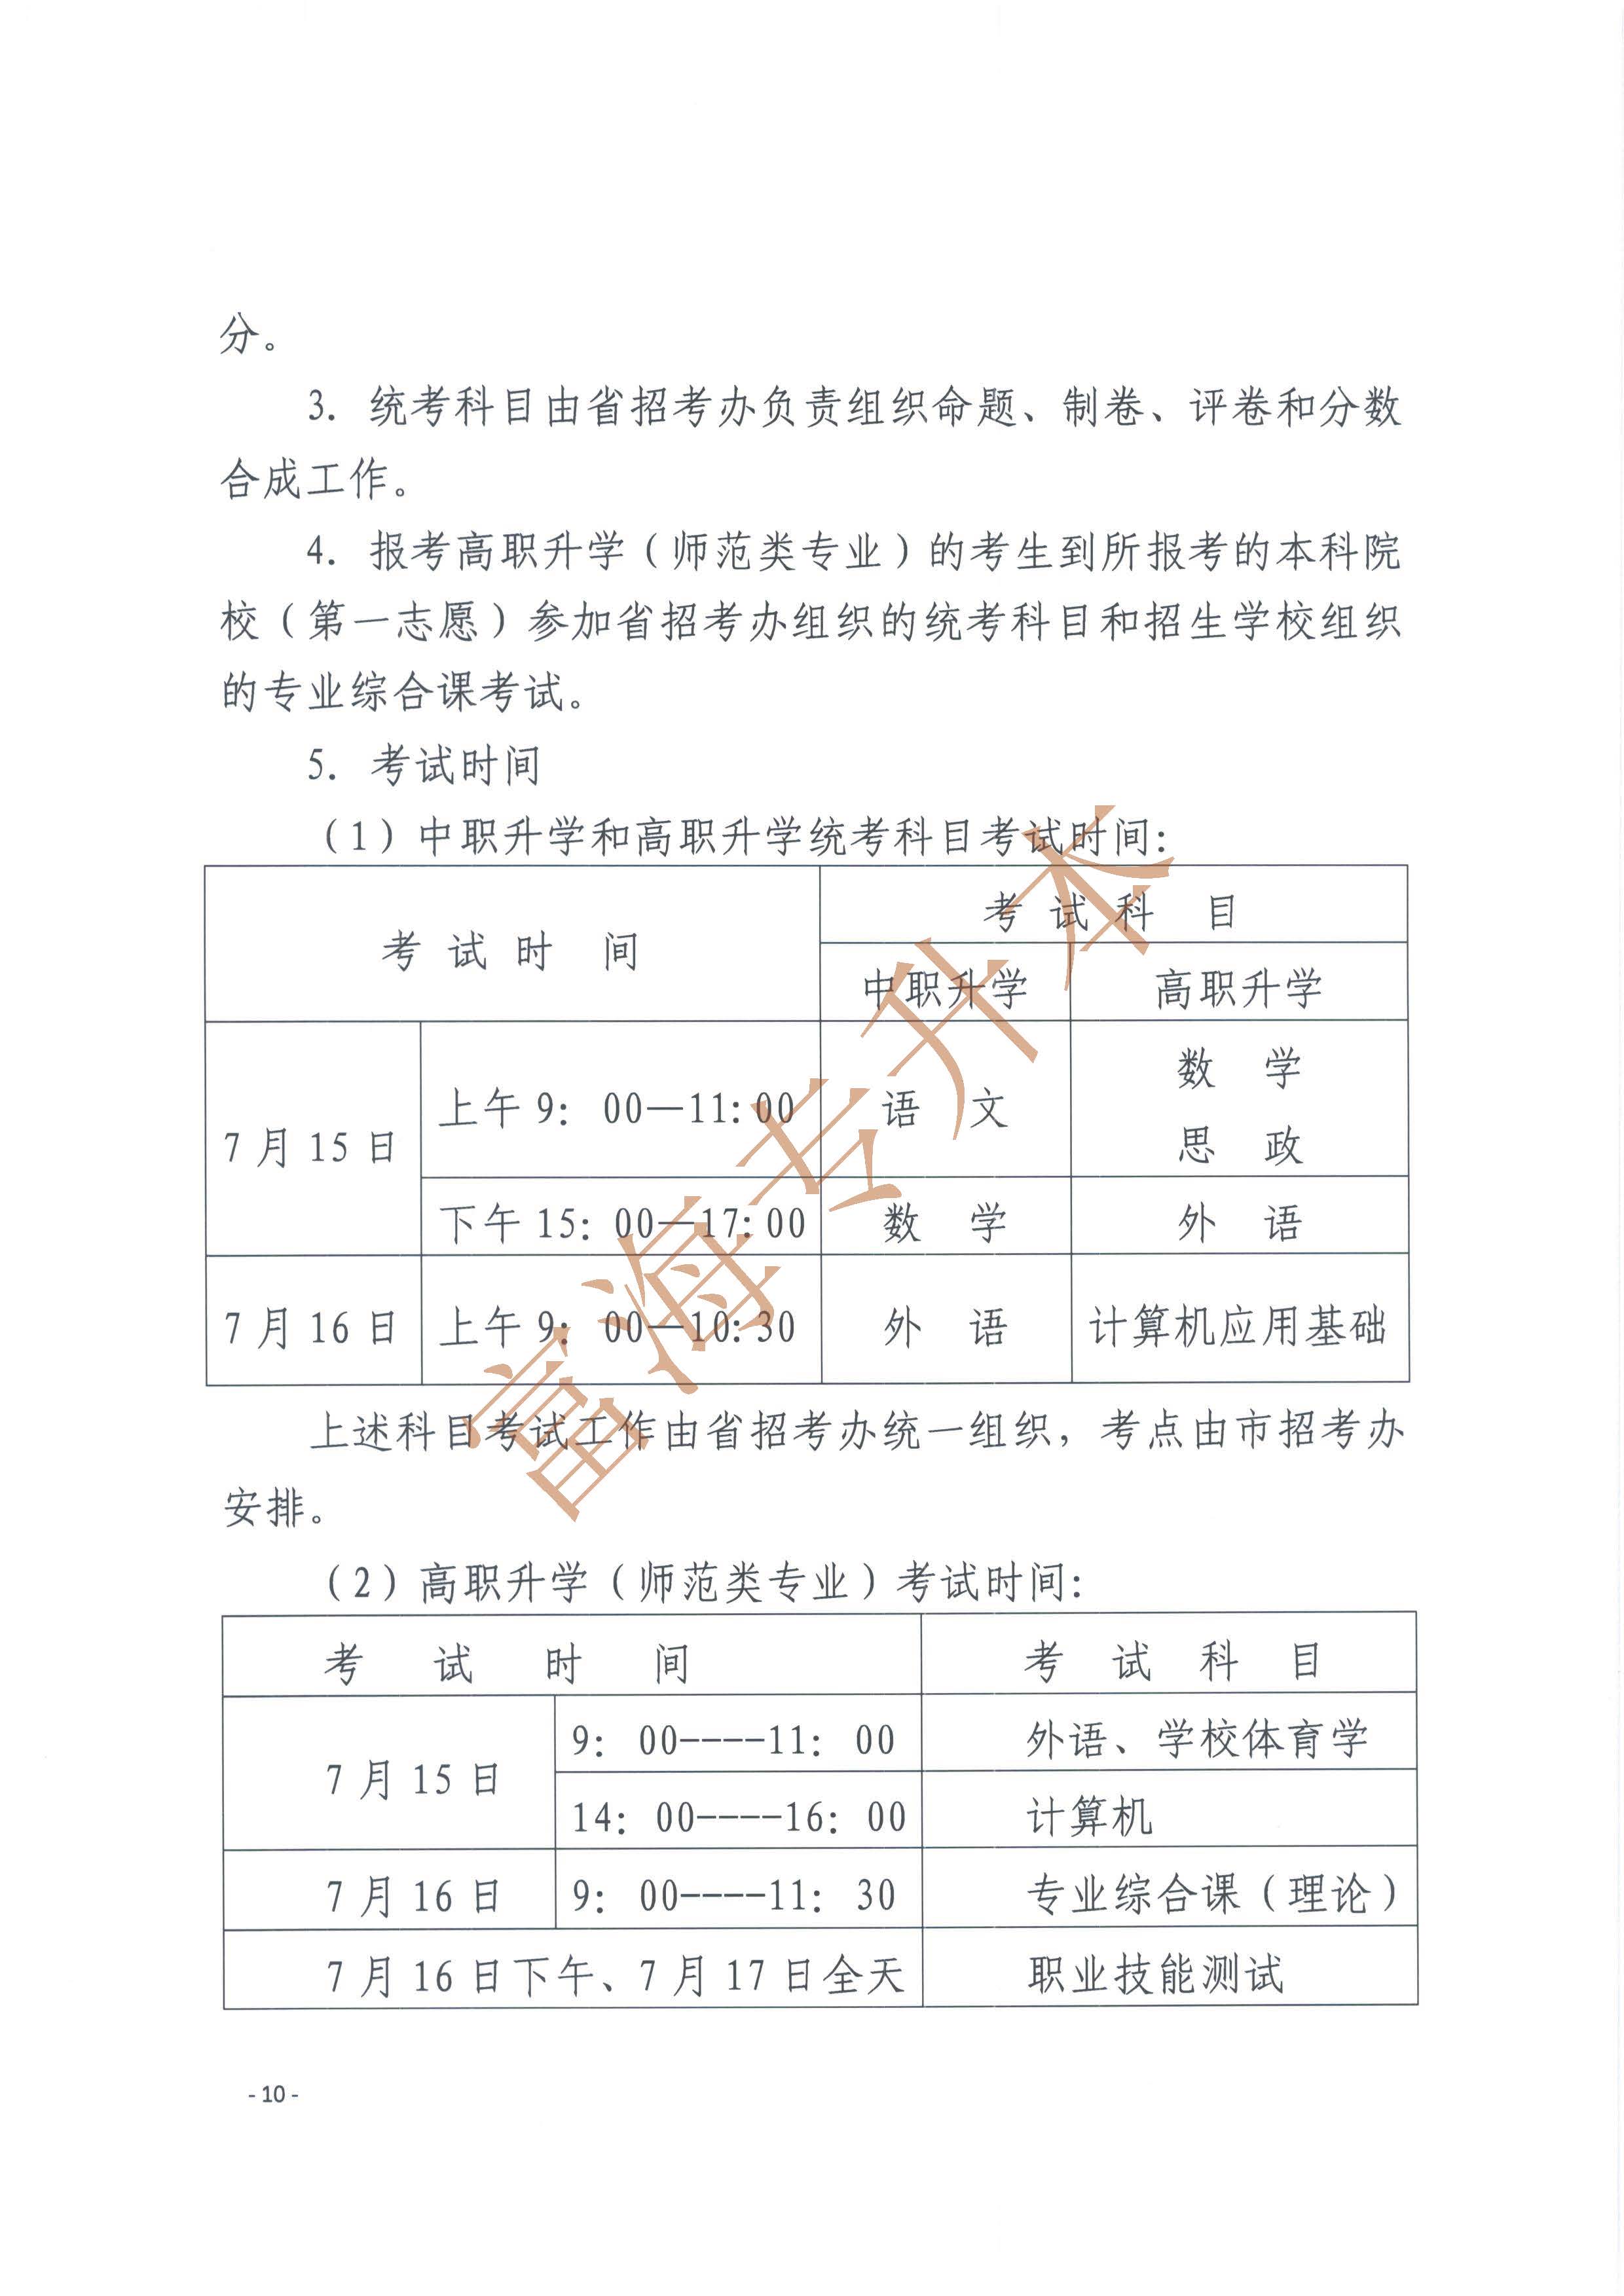 辽宁省2017年职业教育对口升学考试招生工作实施办法的通知10